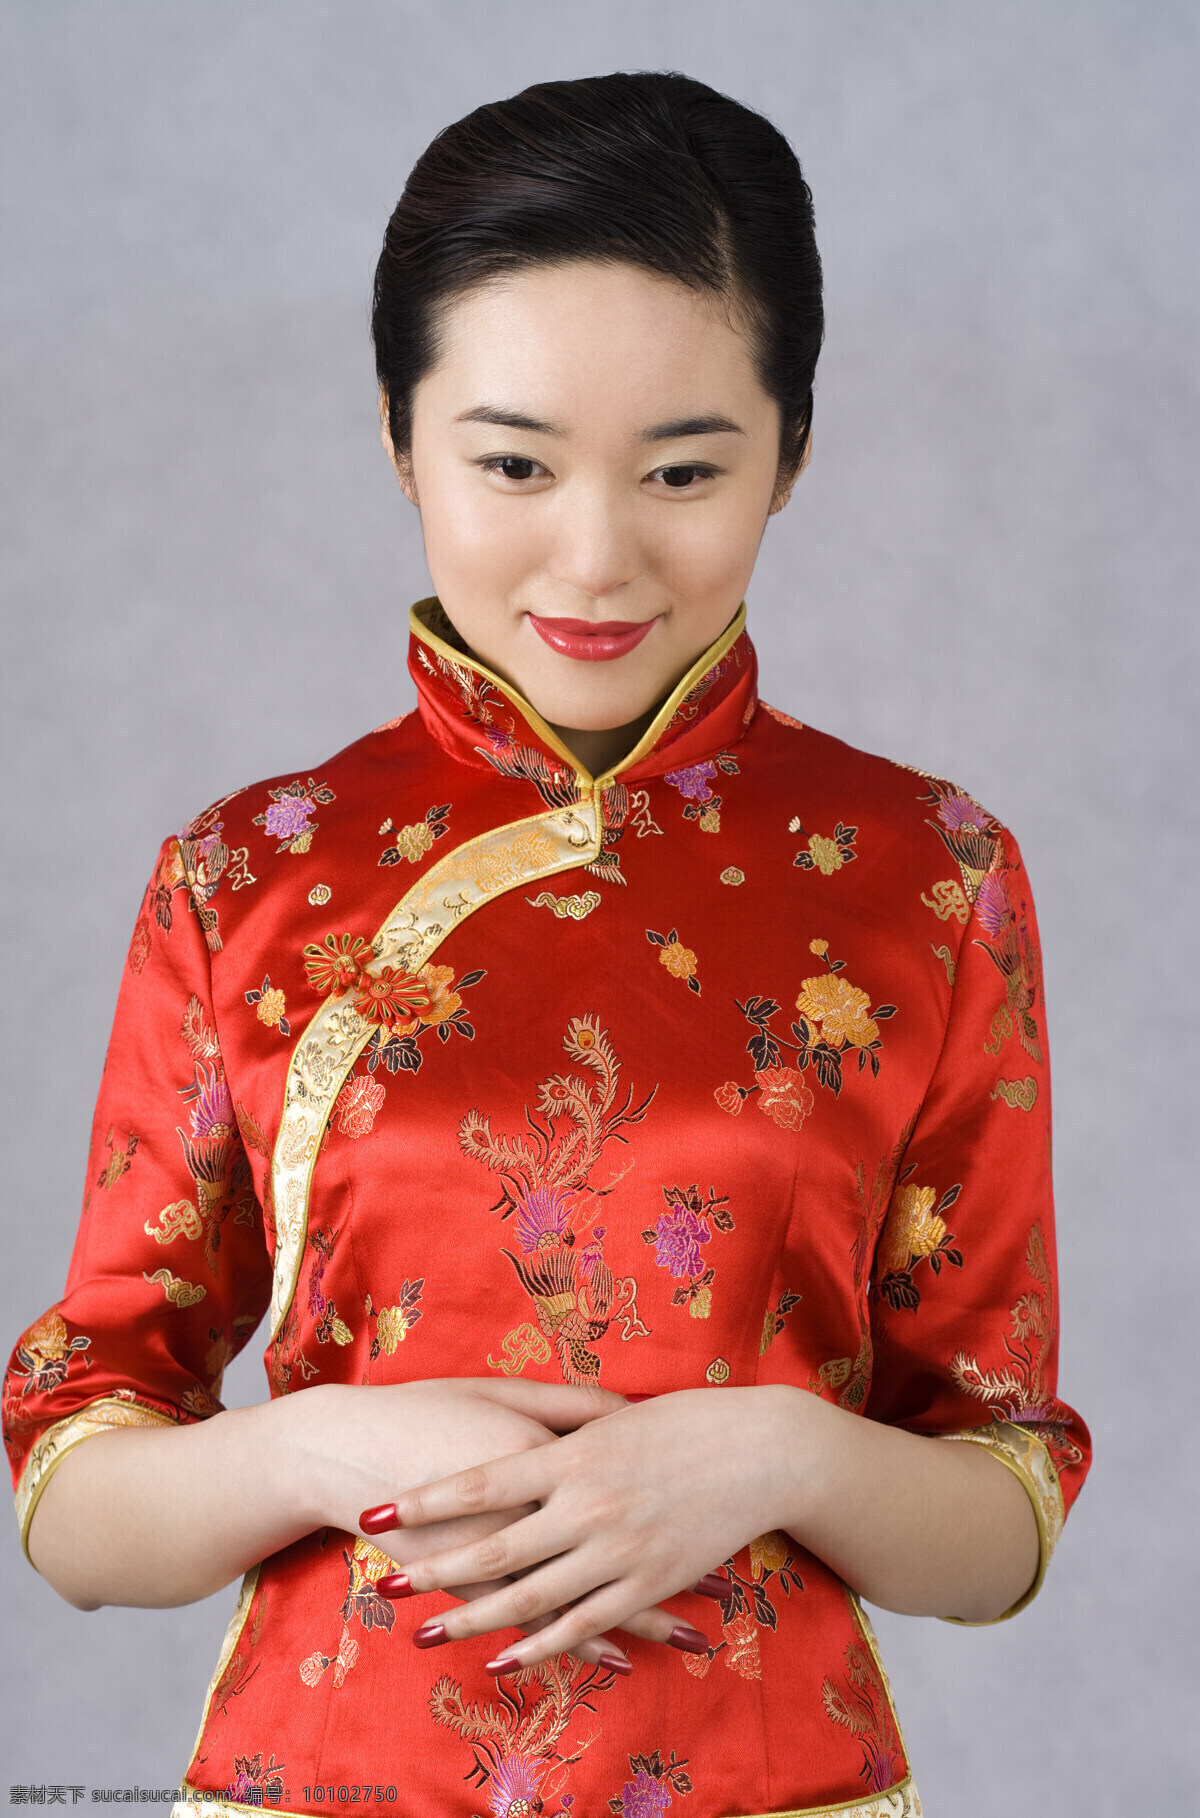 文静 旗袍 女人 东方美人 俯视 低头 双手放腰间 古典 美女 中国风 人物 女性 高清图片 美女图片 人物图片